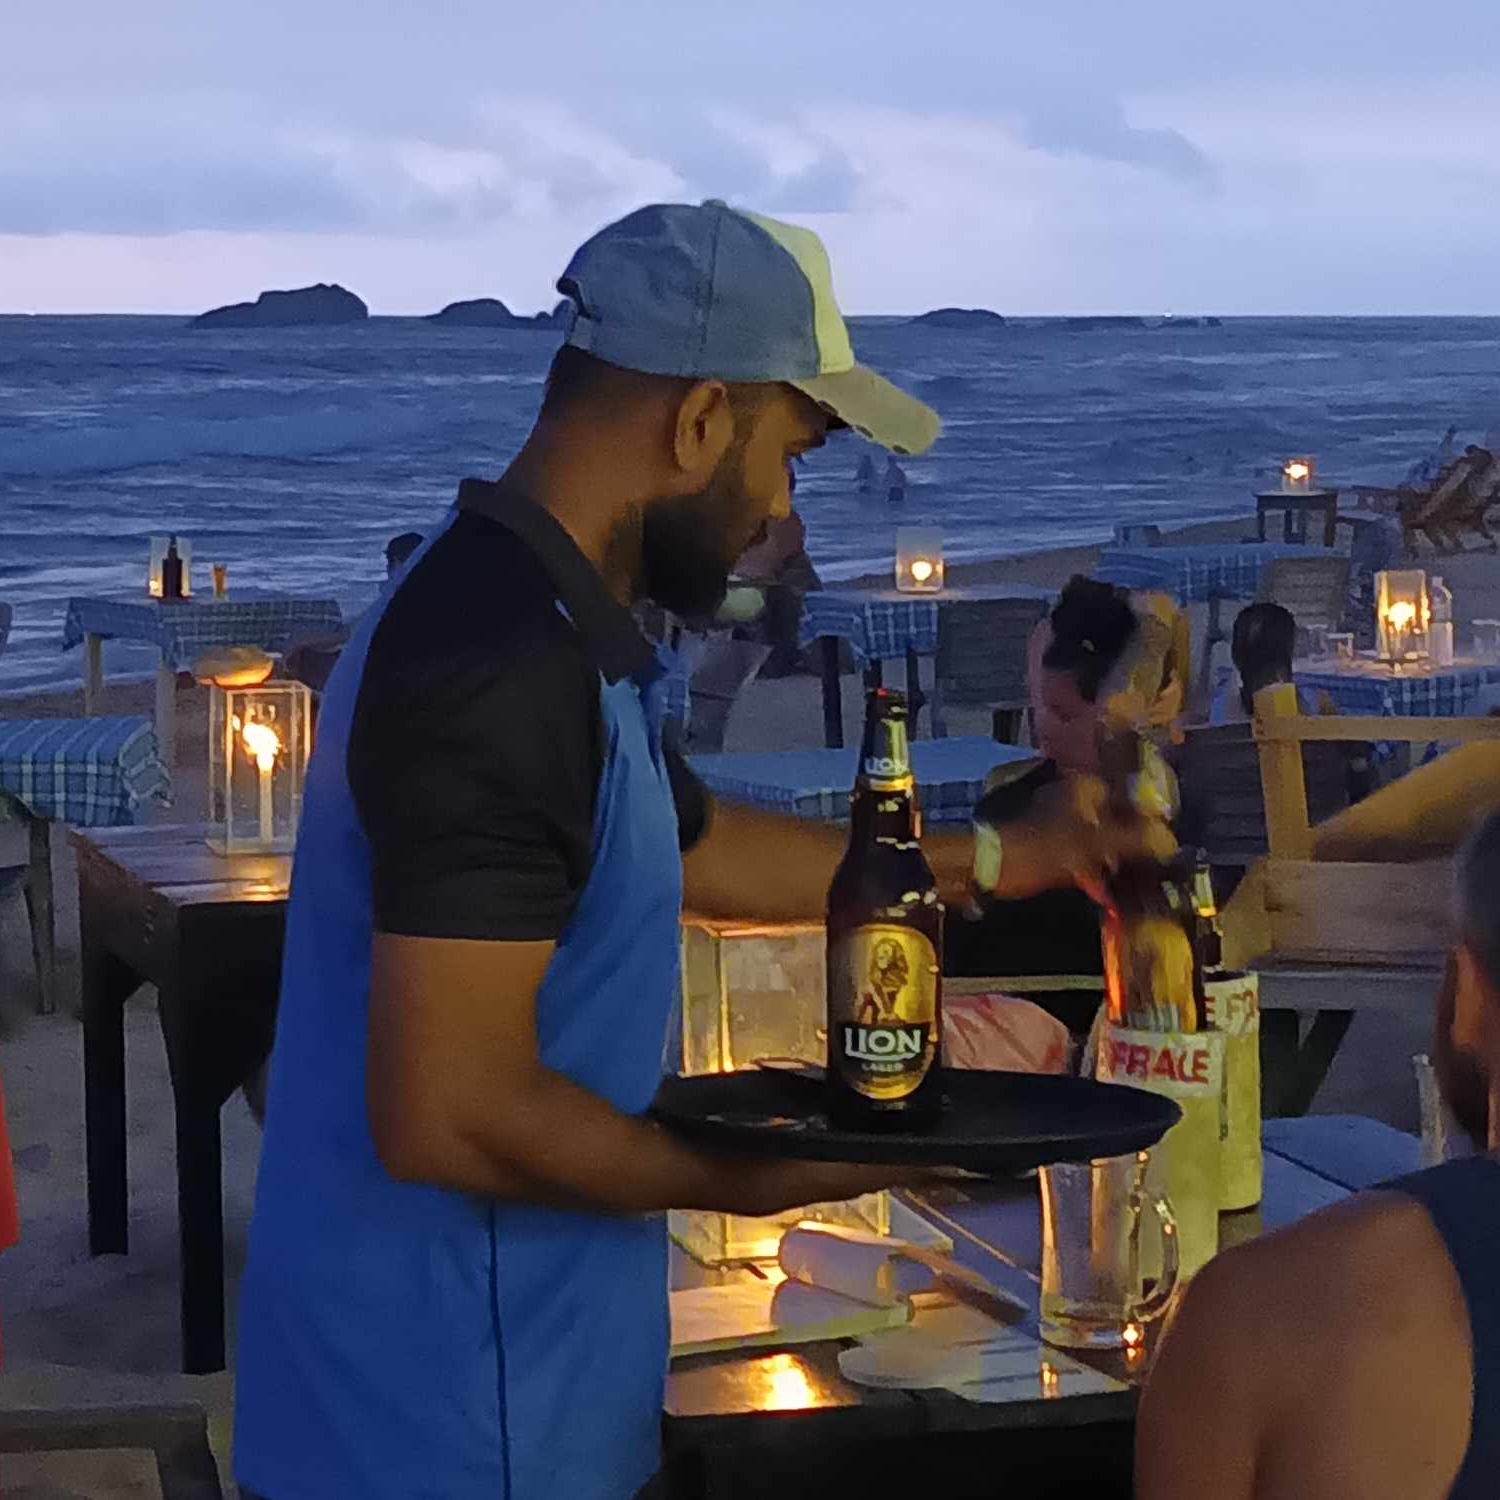 En närbild på en person som serverar öl i en strandbar i skymningen. Havet i bakgrunden.